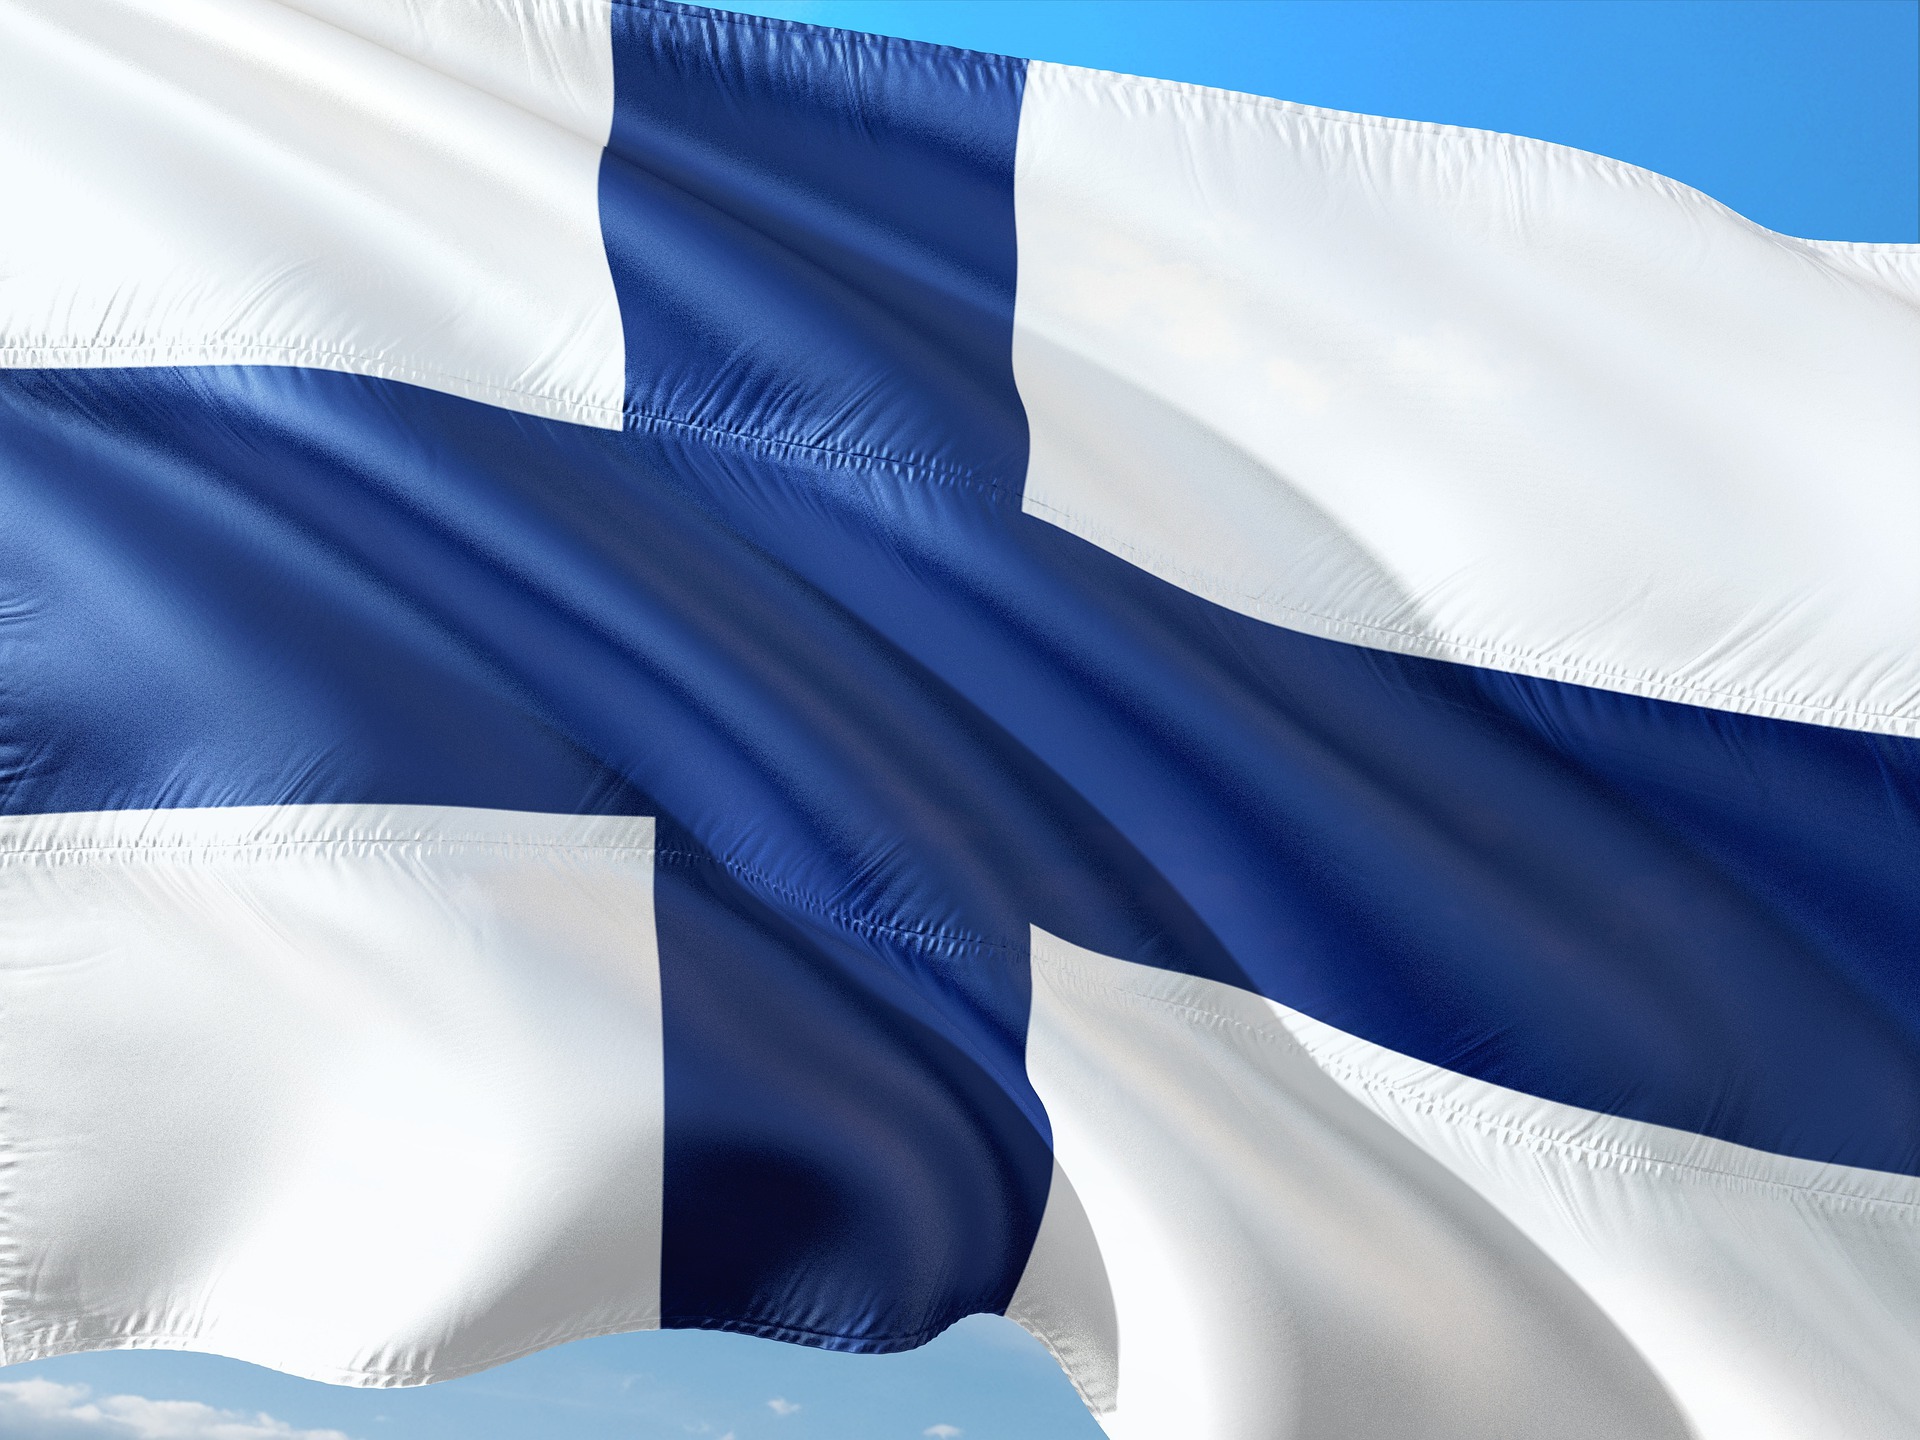 bandeira da finlandia (cruz azul sobre fundo branco)esvoaça sobre um céu azul